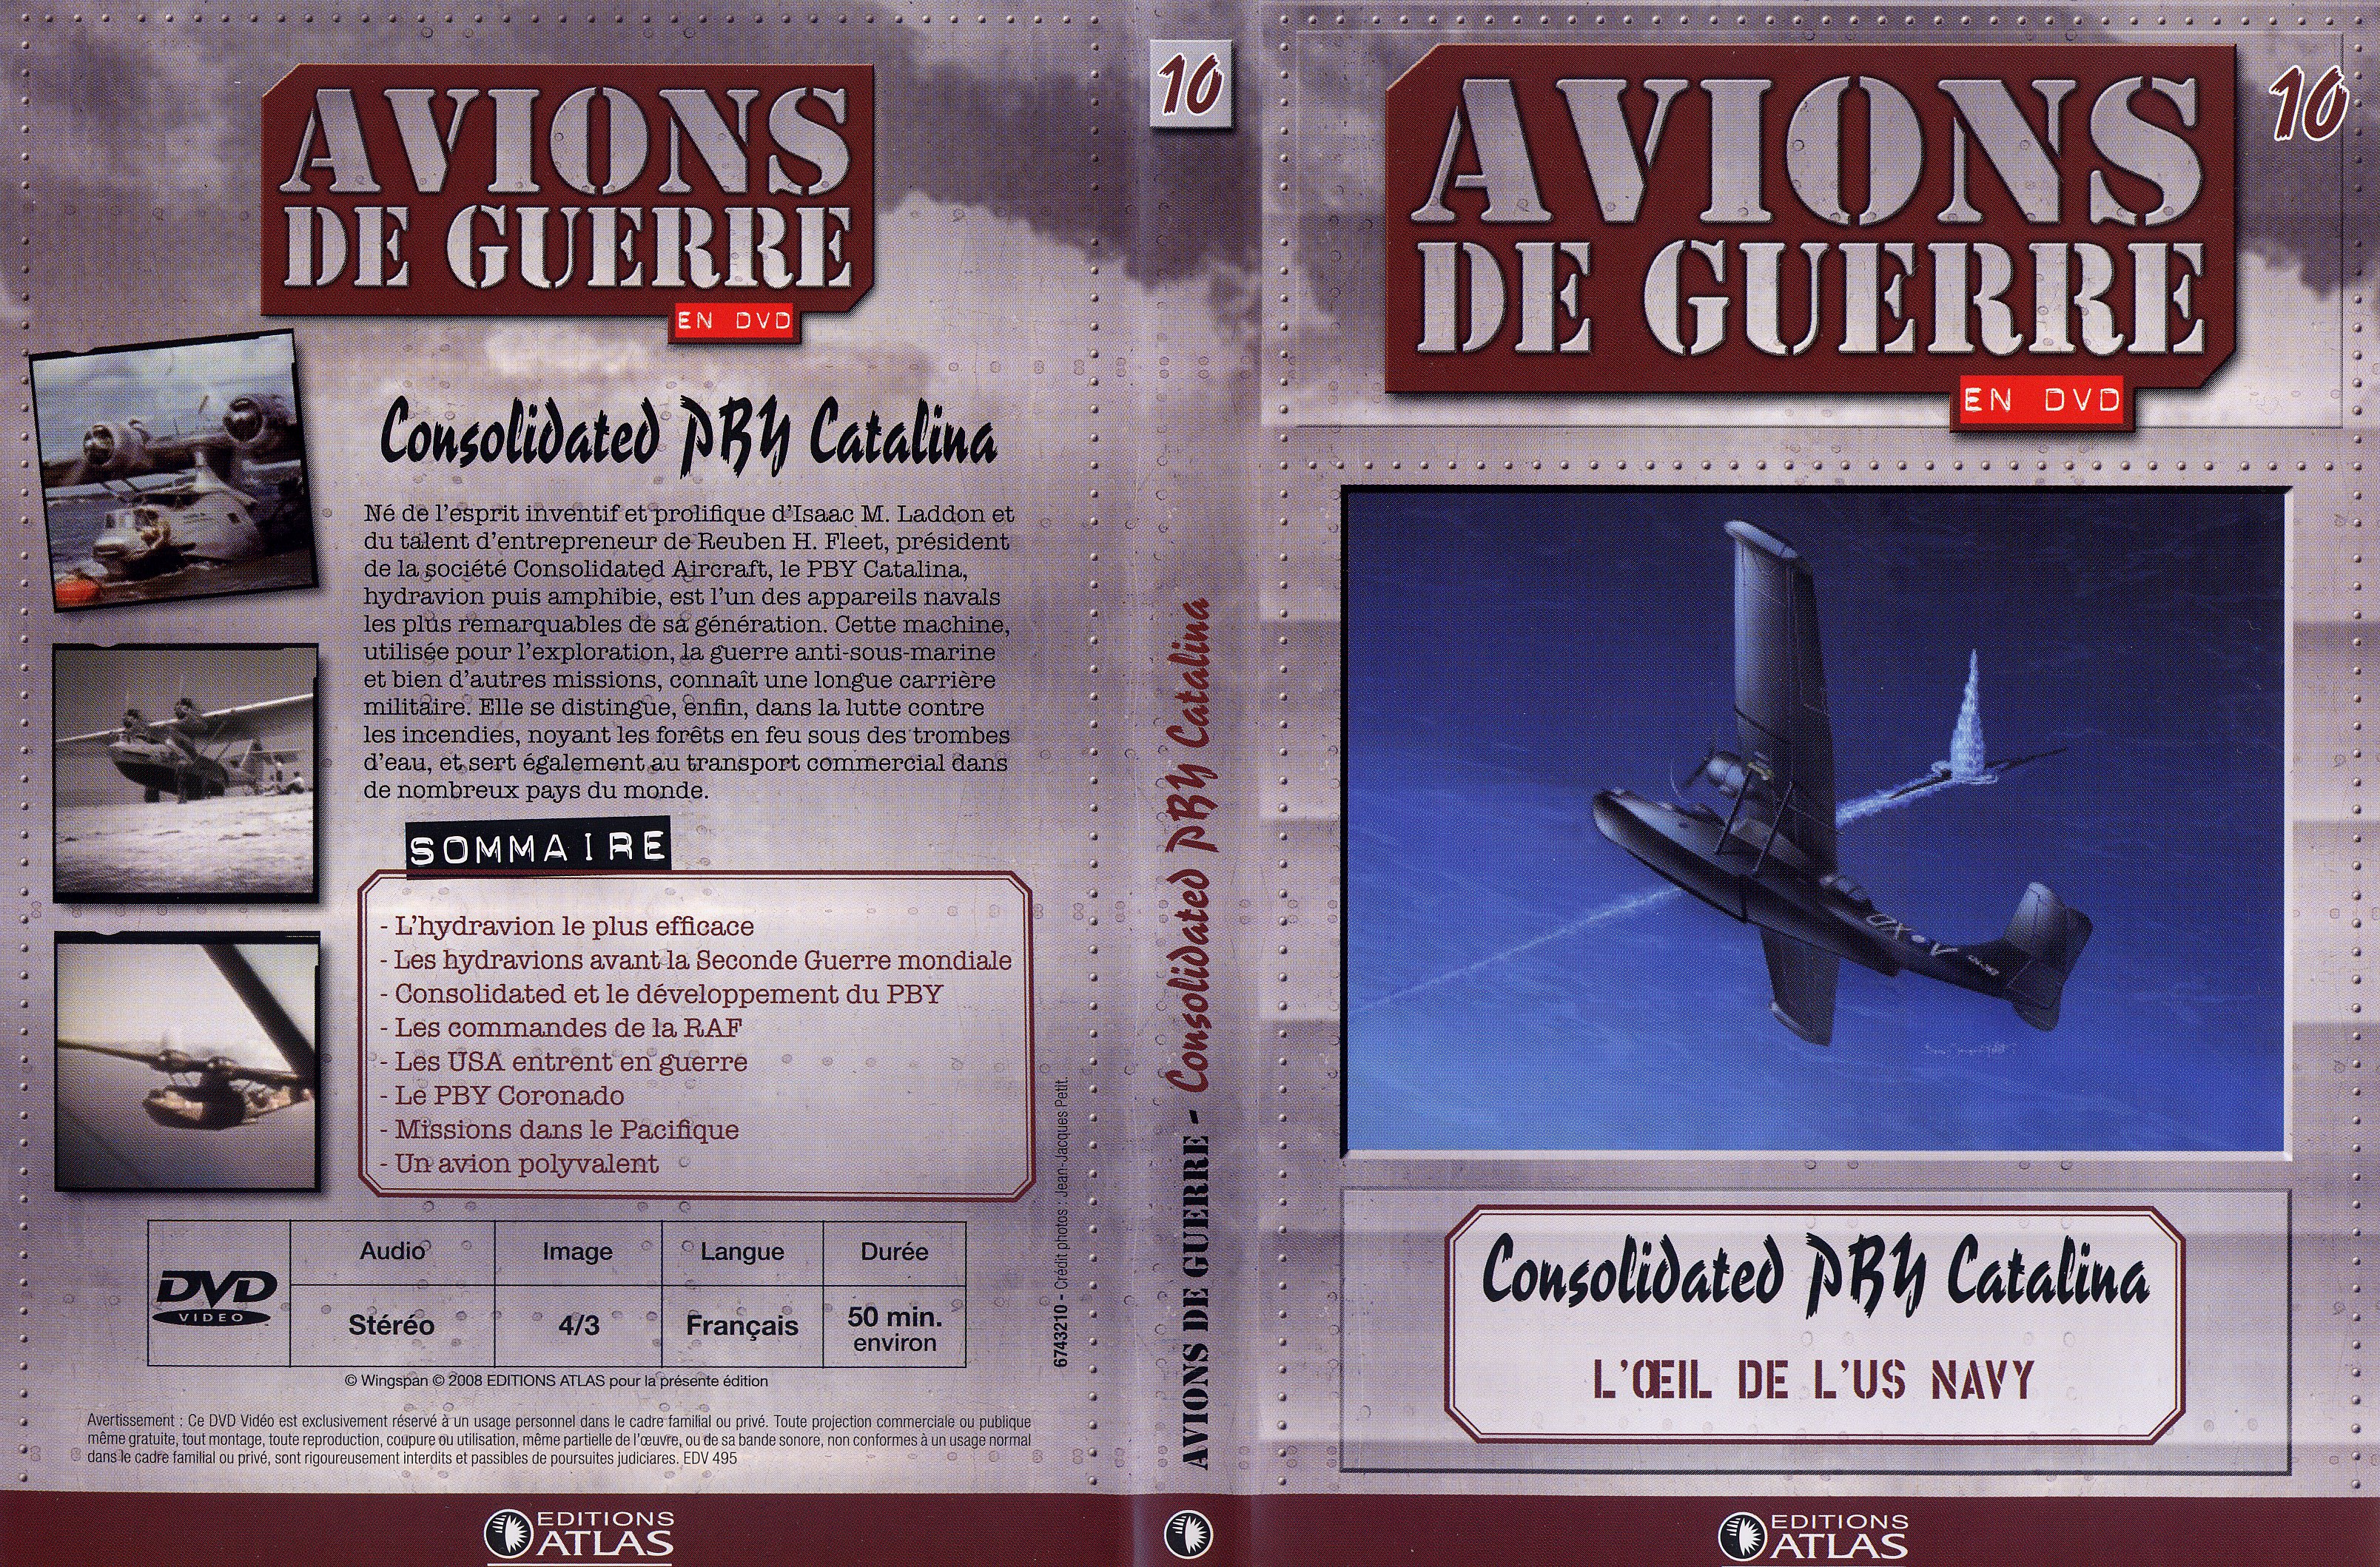 Jaquette DVD Avions de guerre en DVD vol 10